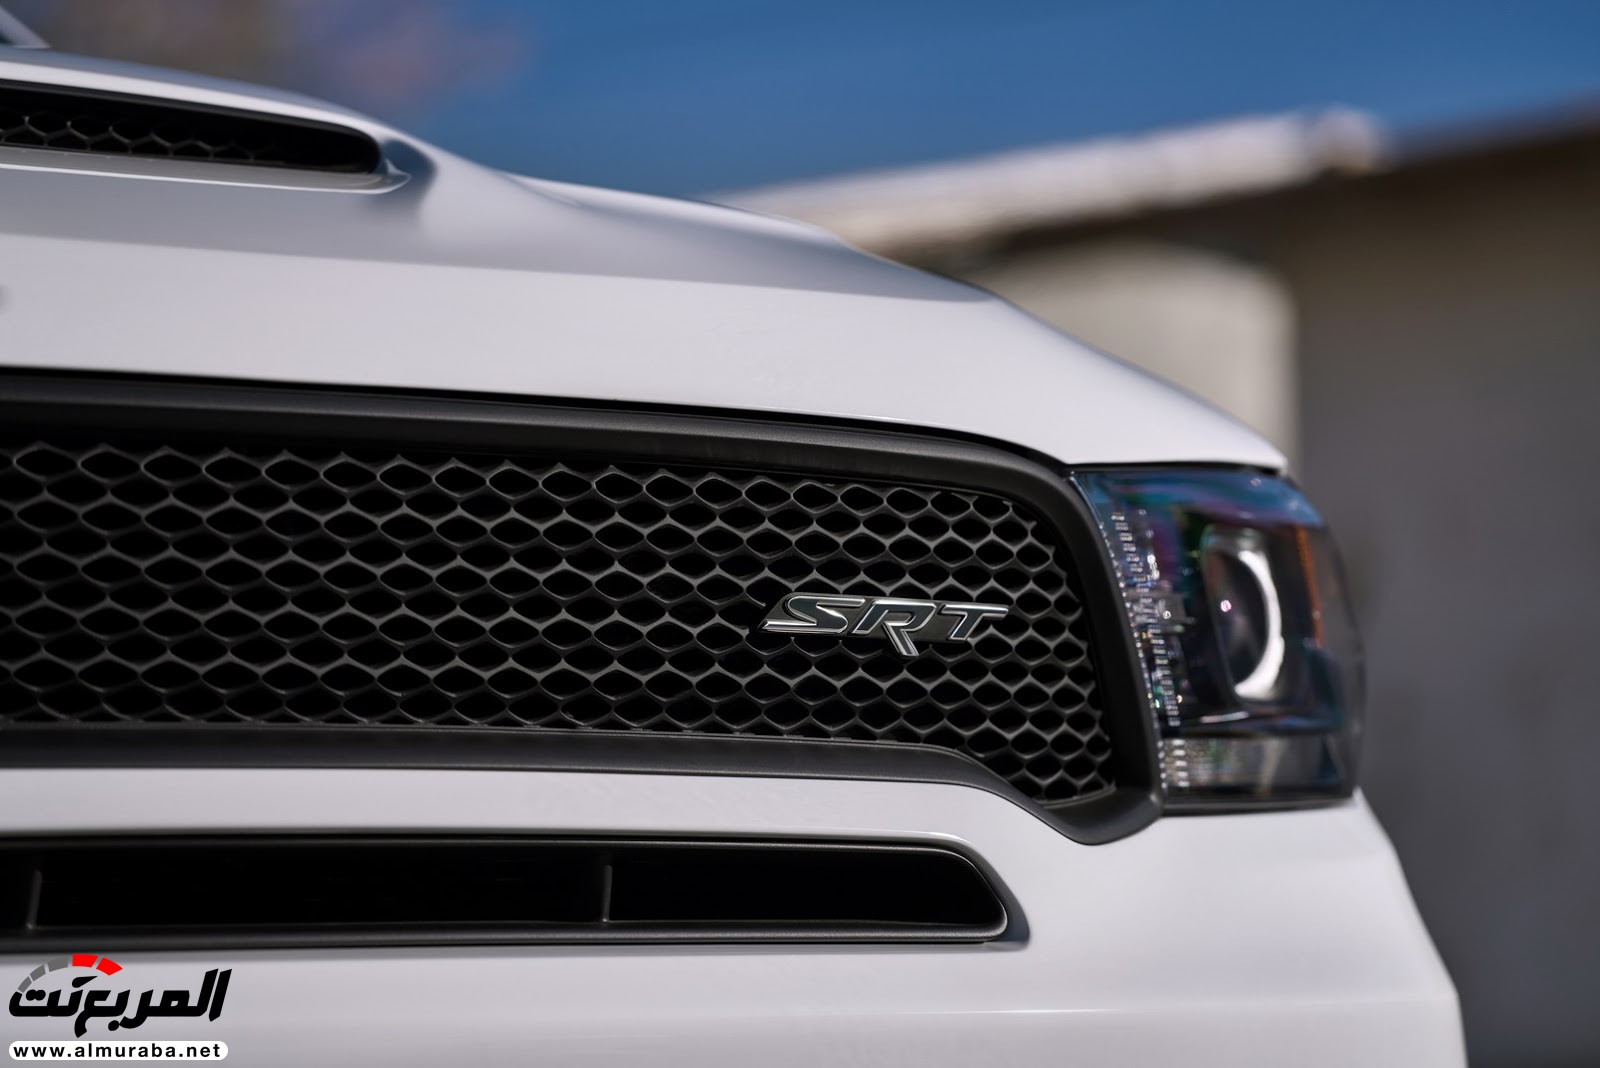 "دودج" دورانجو إس آر تي الجديدة كليا 2018 يكشف عنها بمحرك 475 حصان Dodge Durango SRT 30